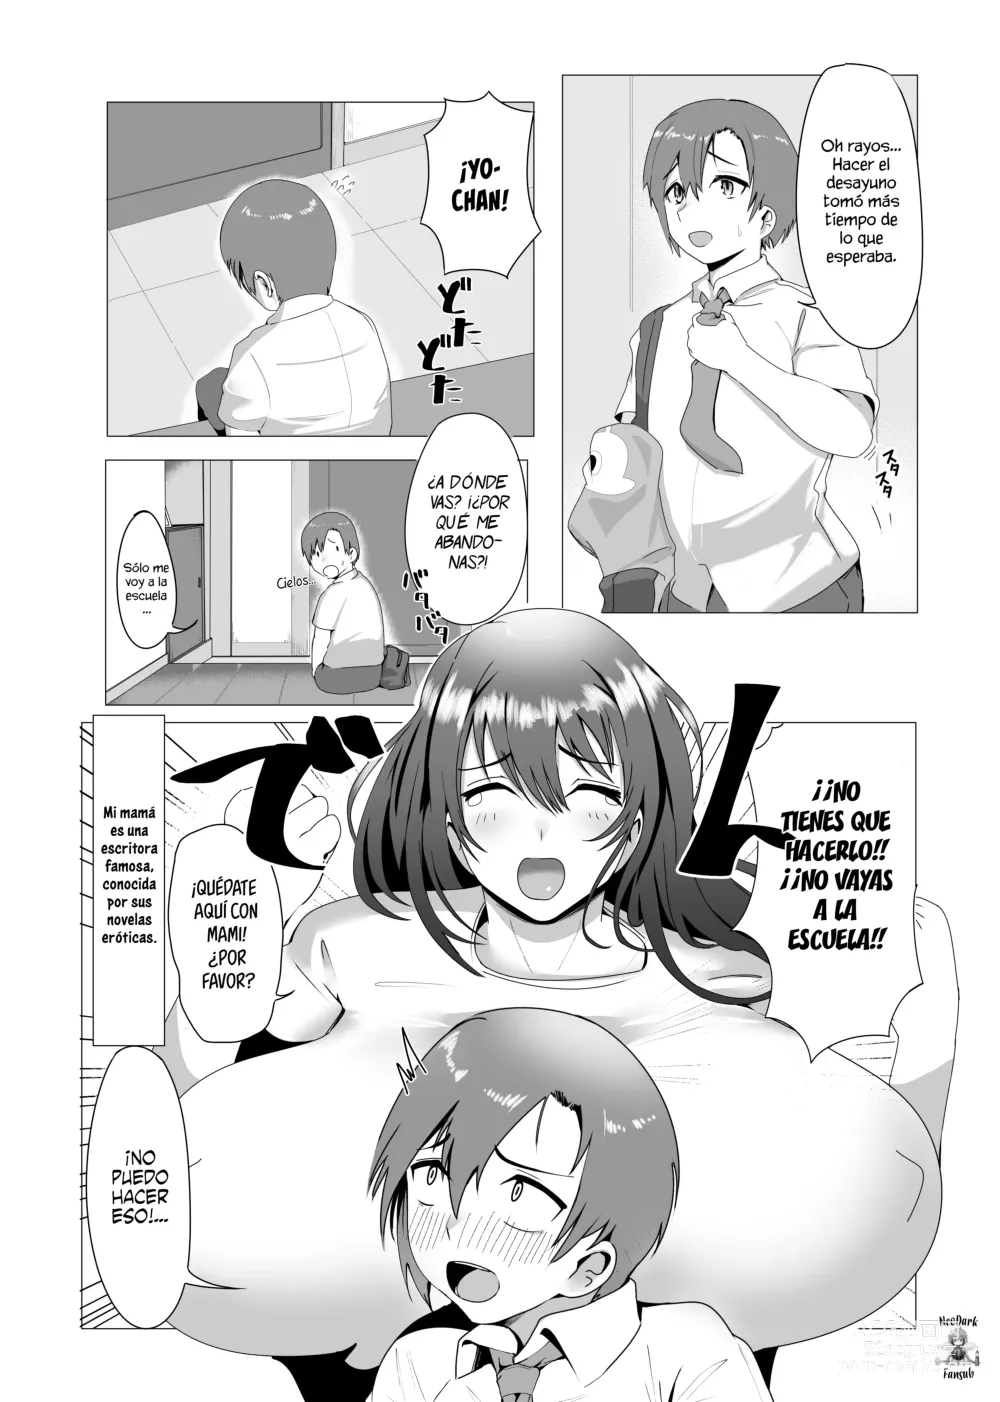 Page 3 of doujinshi ¿Estas bien con mami?